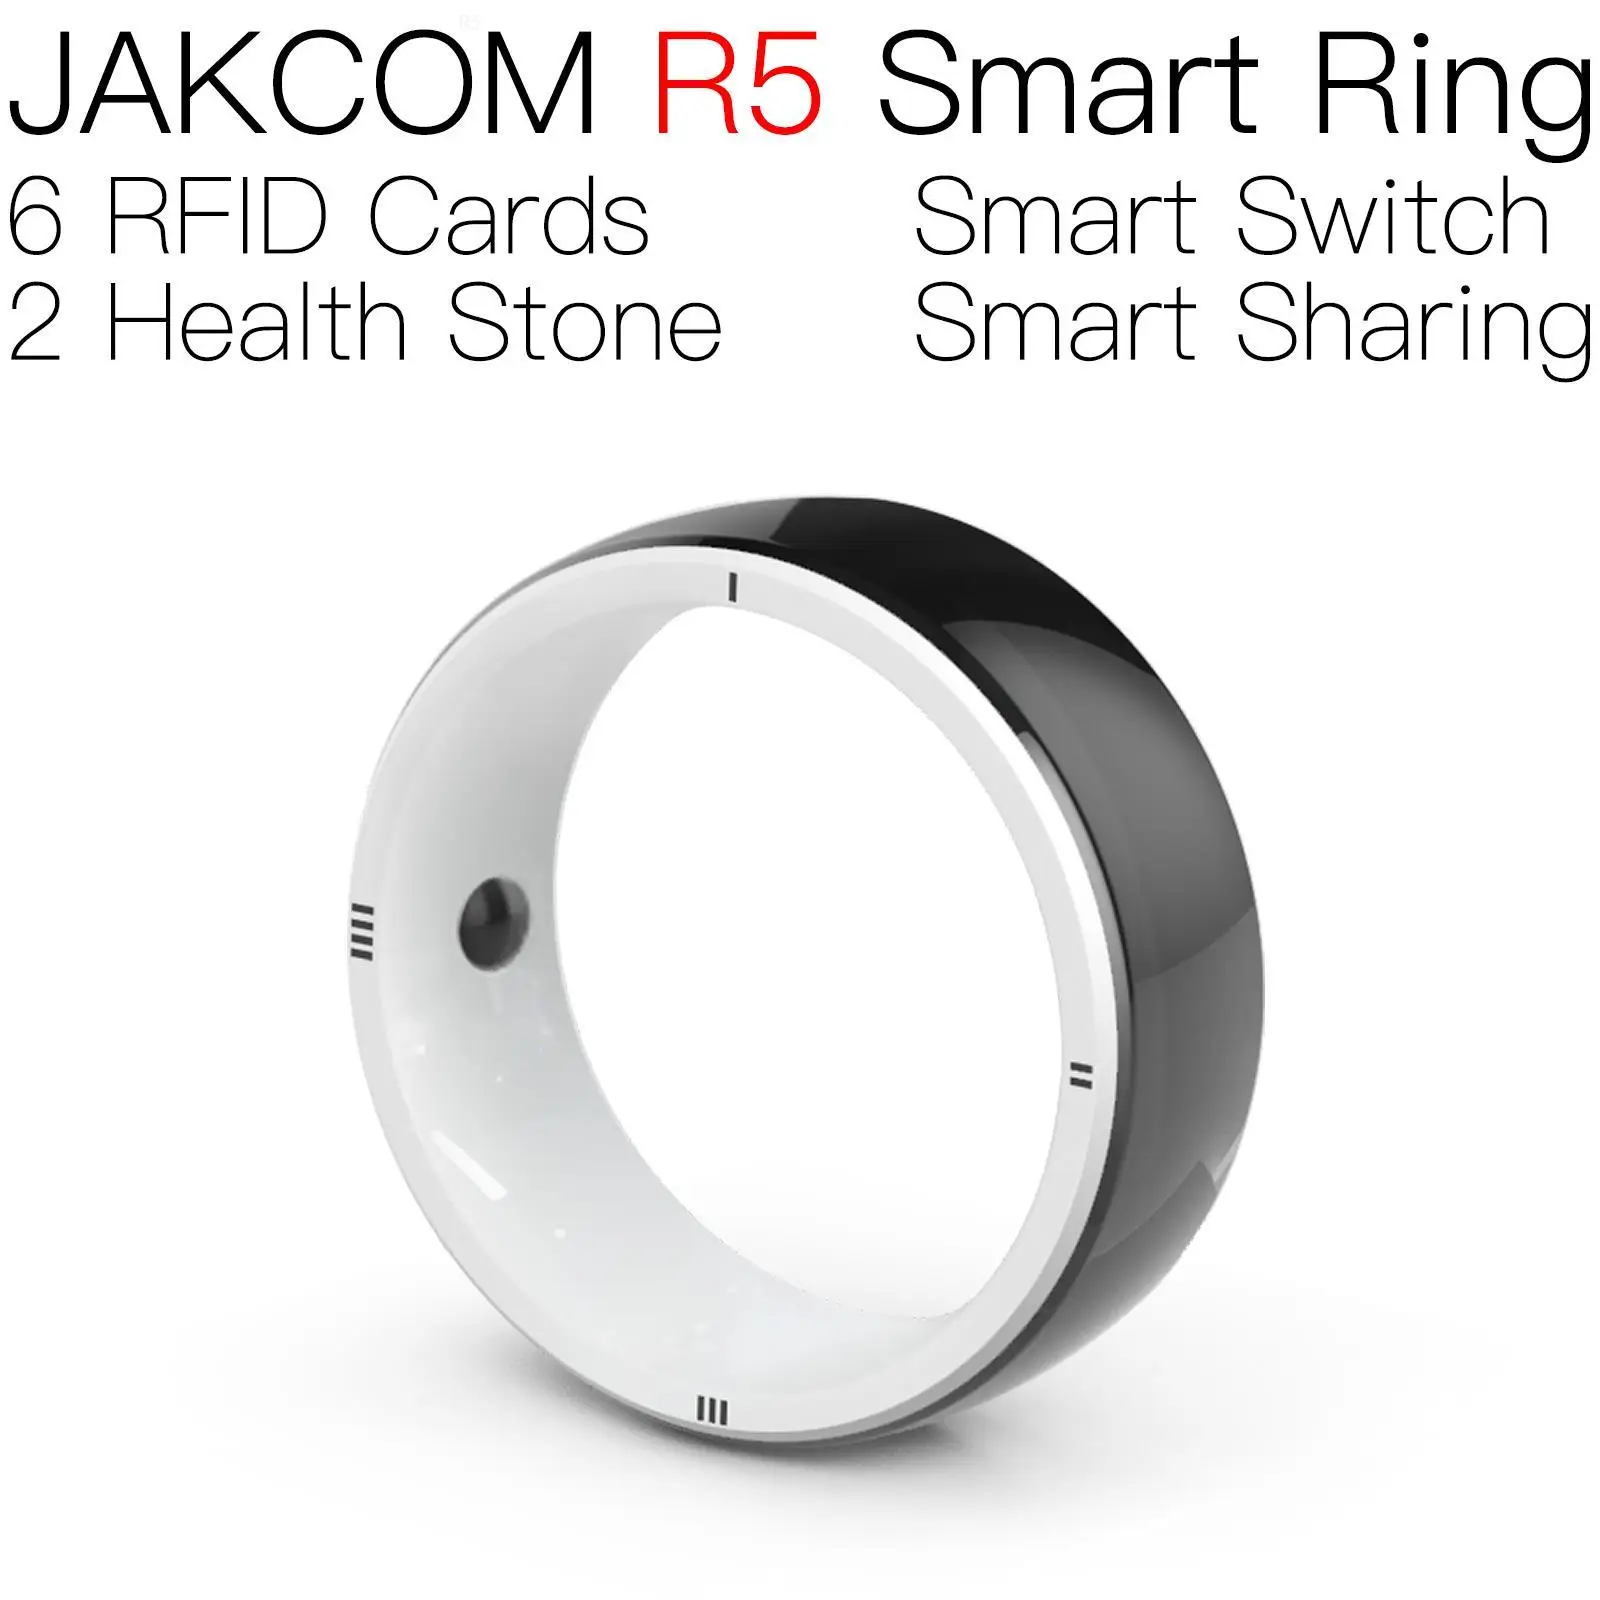 

Умное кольцо JAKCOM R5, Новое поступление, как сказал Официальный магазин german bond external prime 1, записываемый блок 0